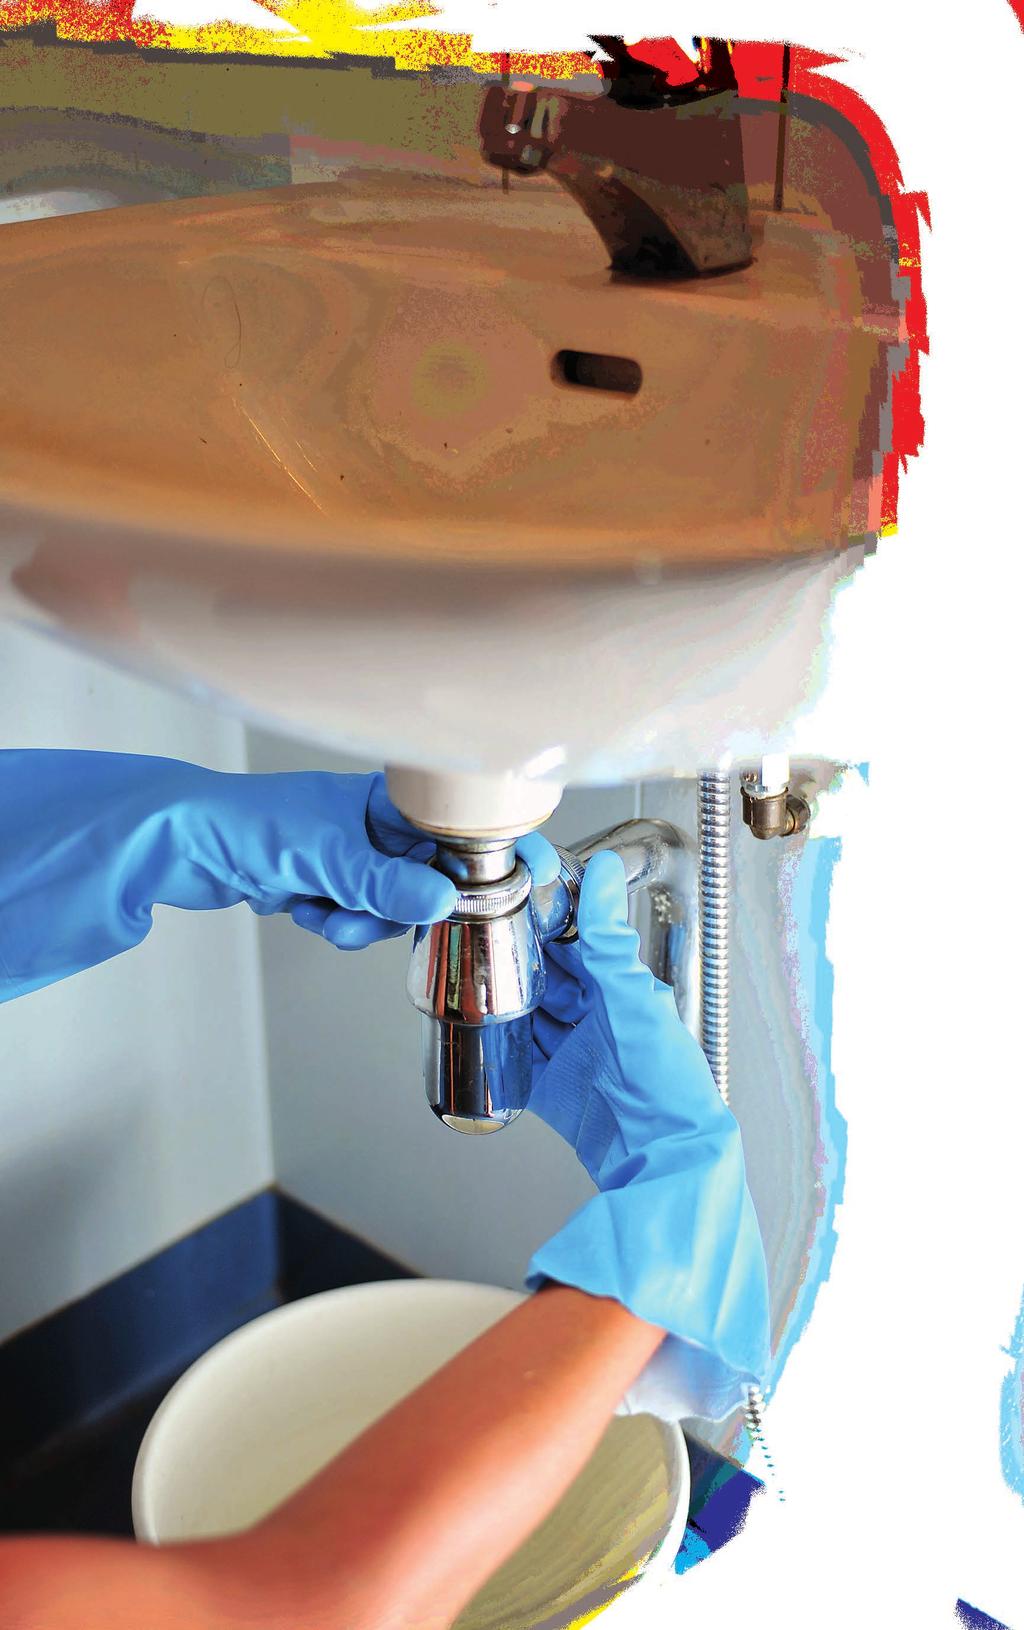 Hajulukkoa eli vesilukkoa käytetään wc-istuimissa ja pesualtaissa, ettei viemärin haju leviä huoneistoon. Vesilukon puhdistaminen kuuluu asukkaalle.